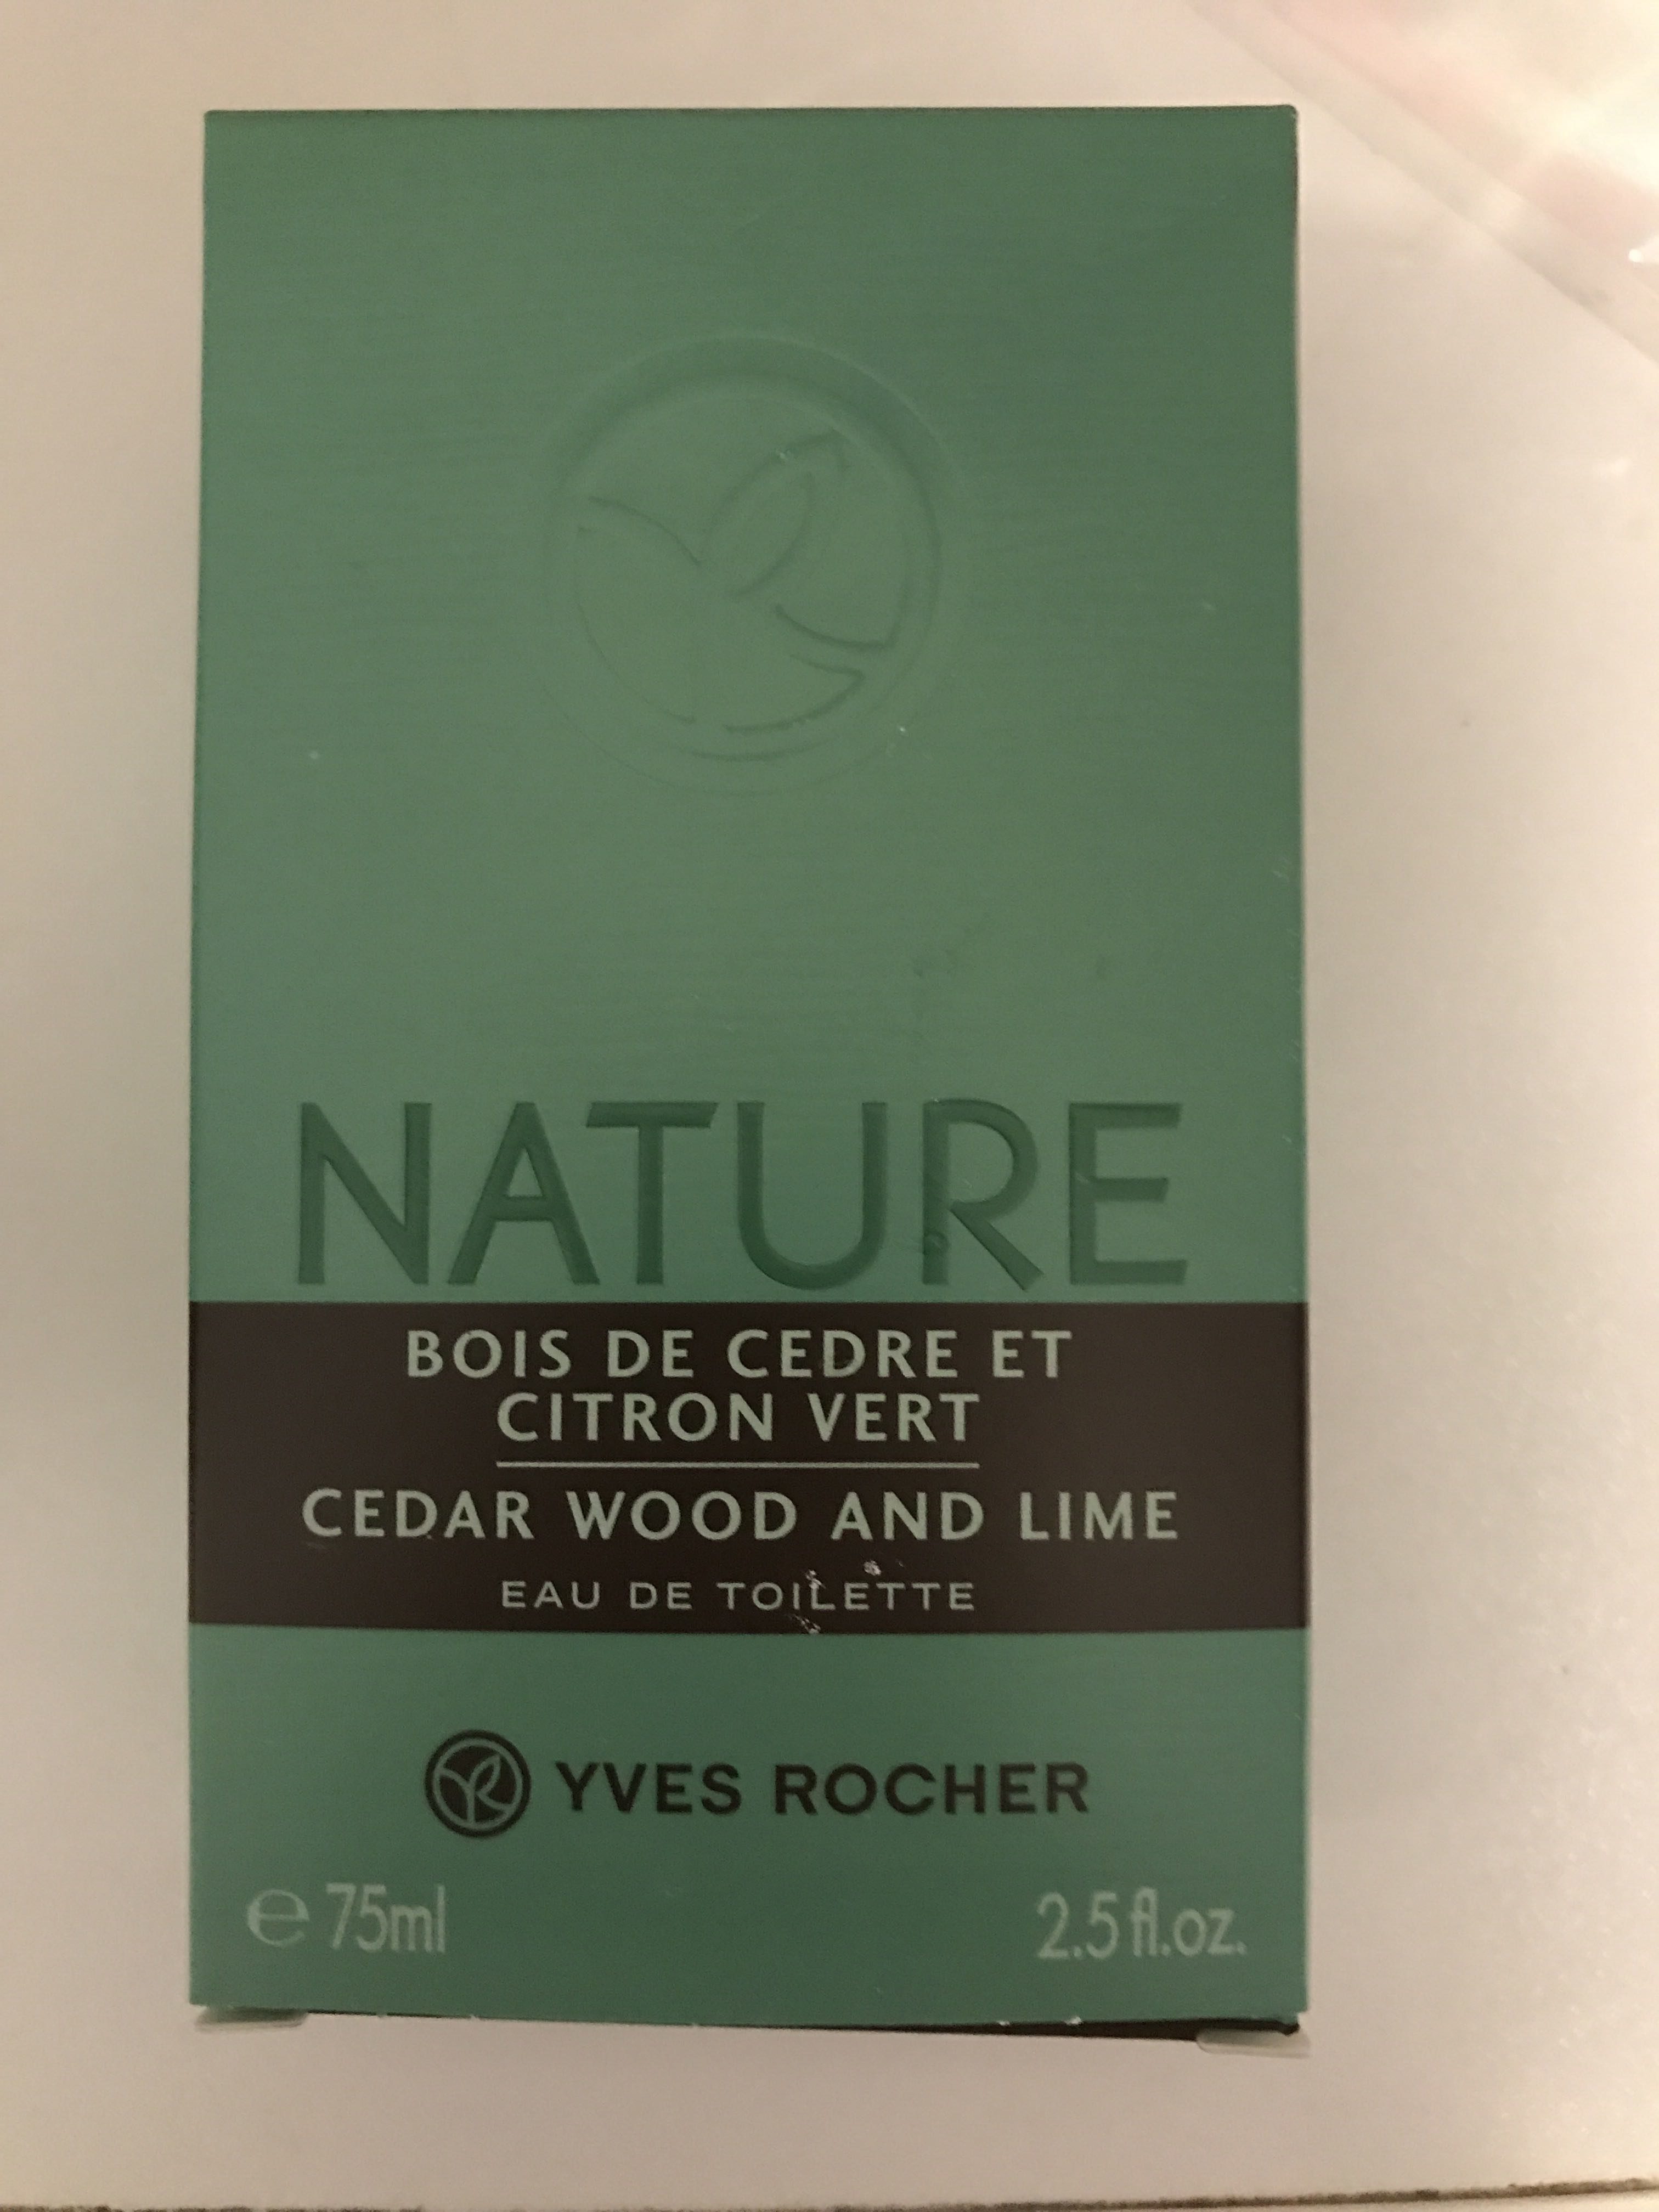 Nature Bois de cèdre et Citron vert - Product - fr